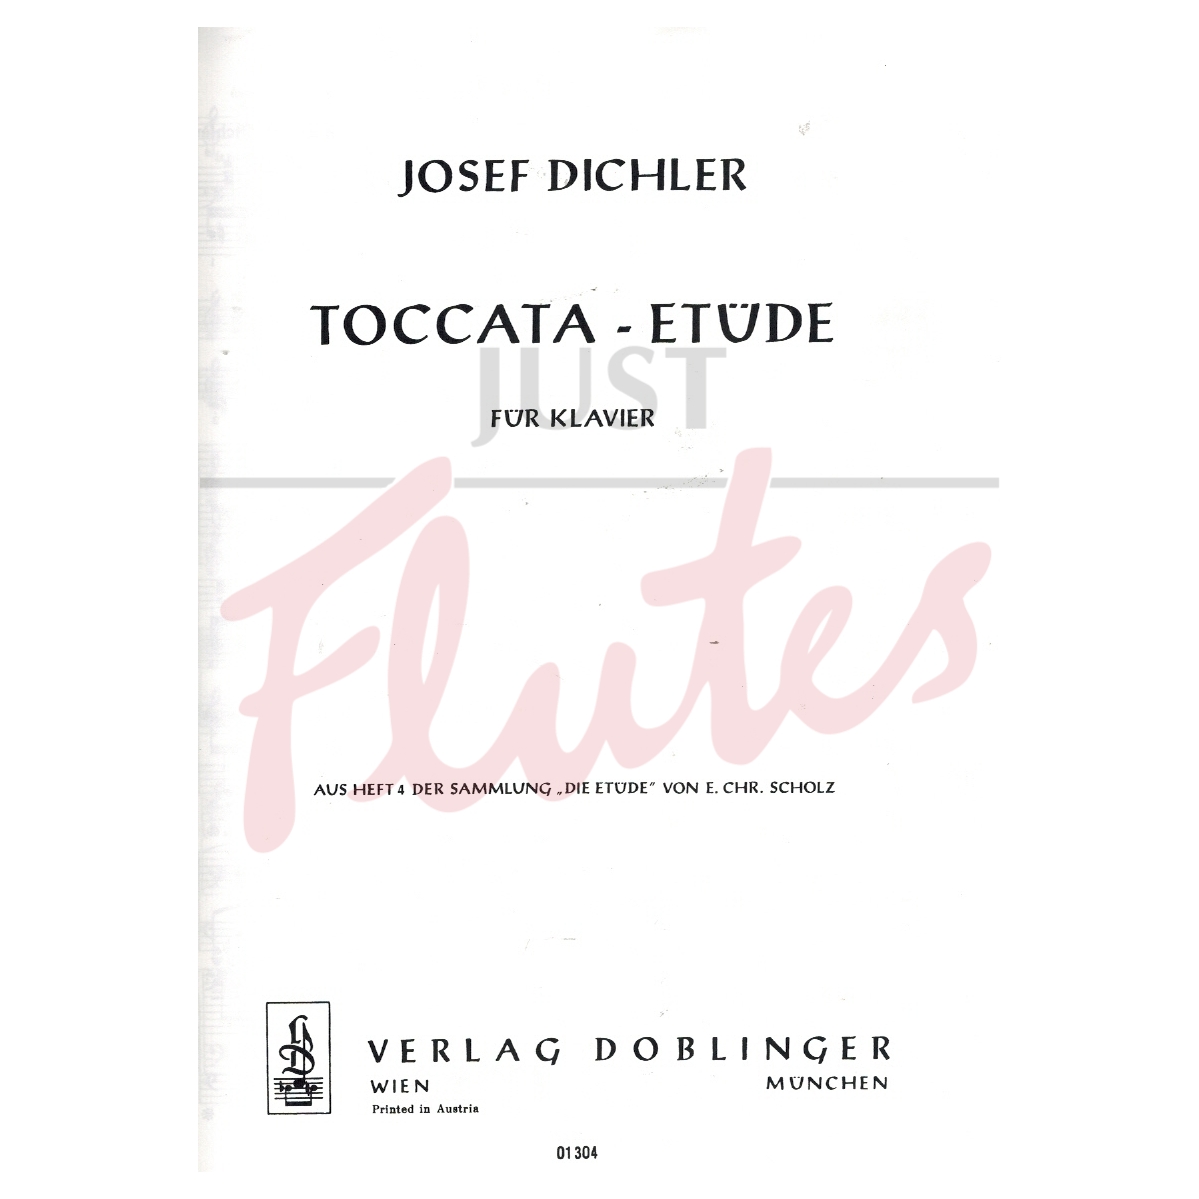 Toccata-Etude for Piano